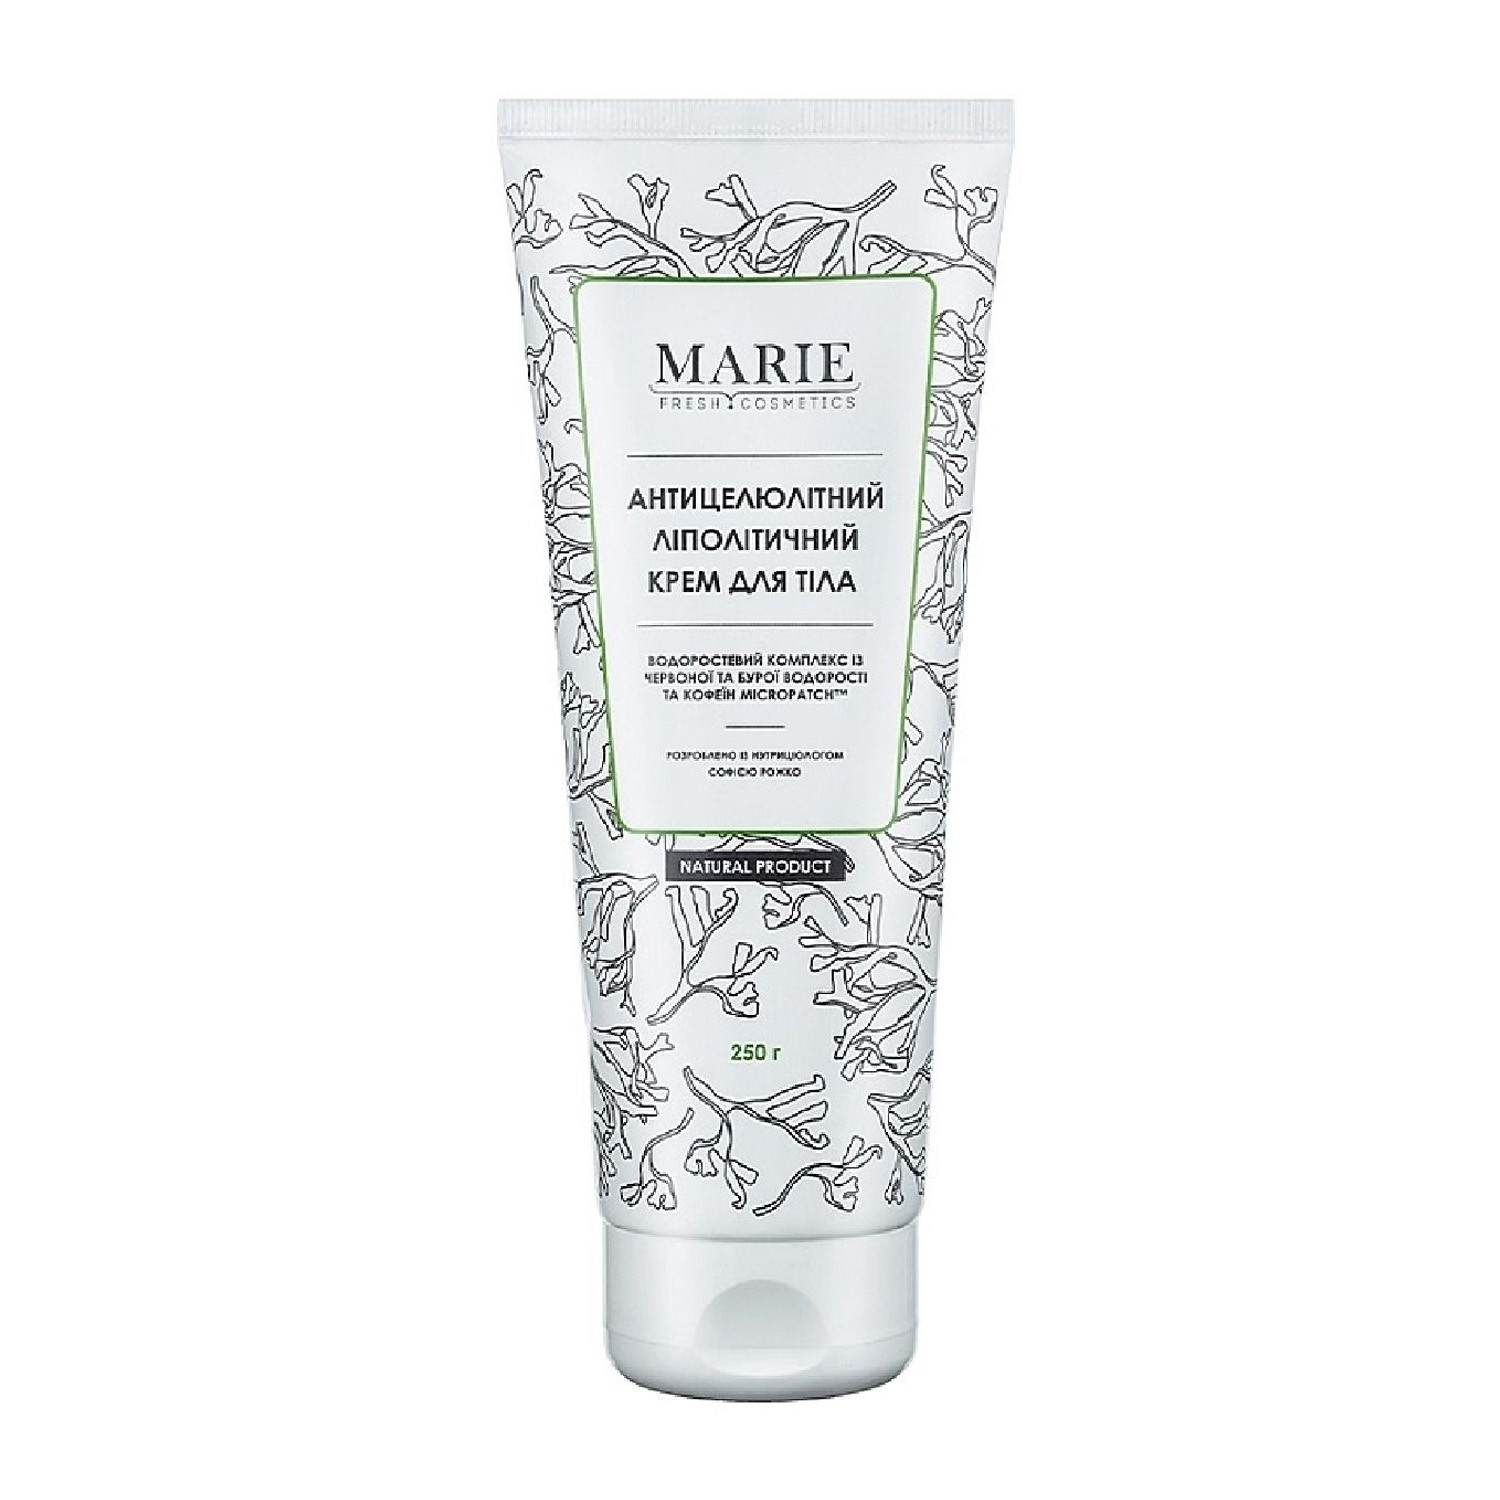 Marie Fresh Cosmetics Anti-Cellulite Body Cream - Антицелюлітний ліполітичний крем для тіла